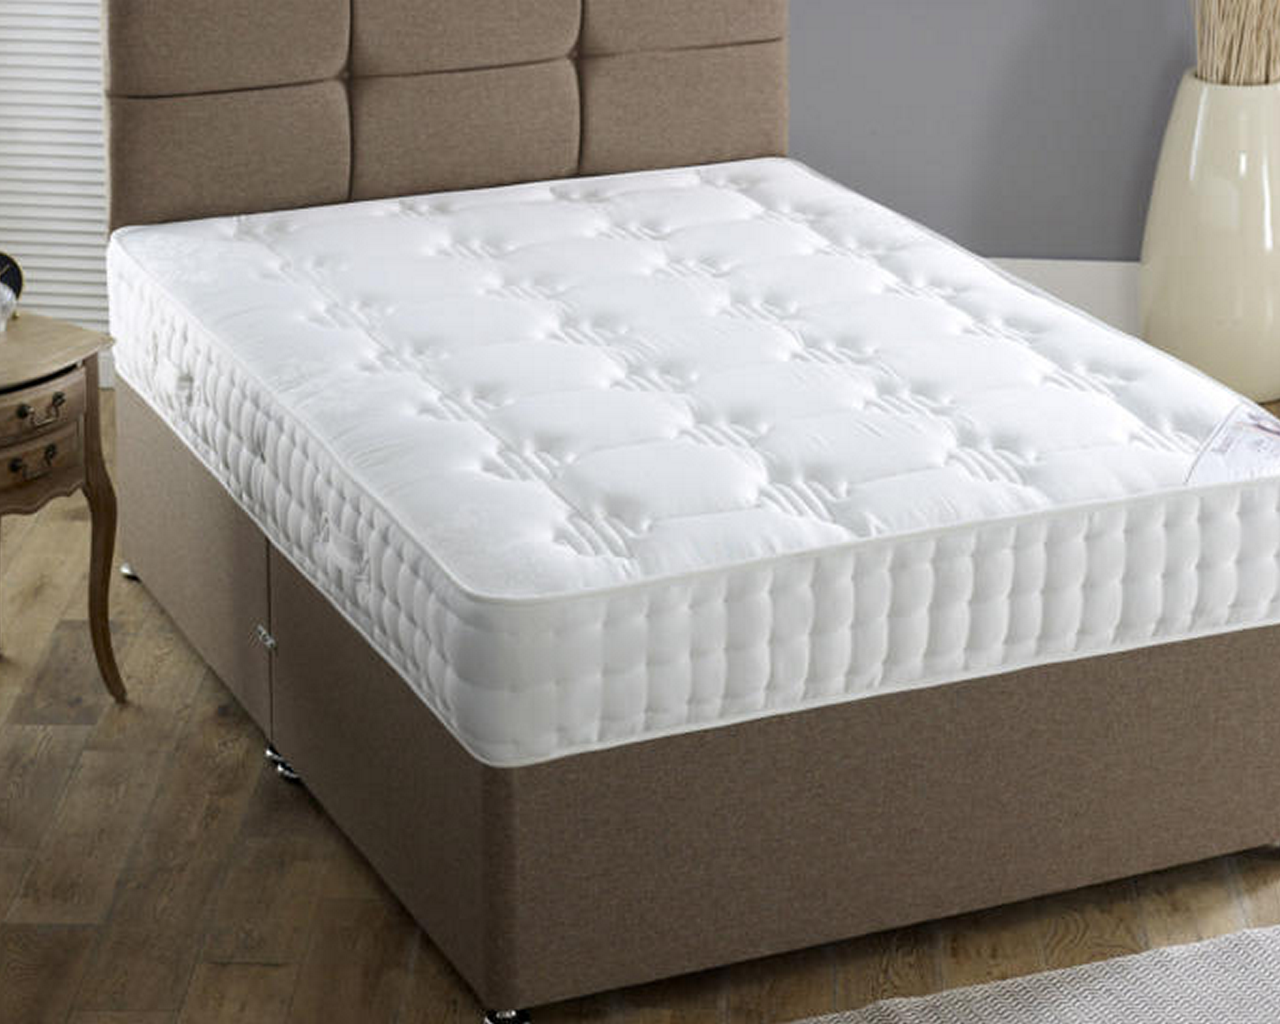 hilton-mattress-1 - 1